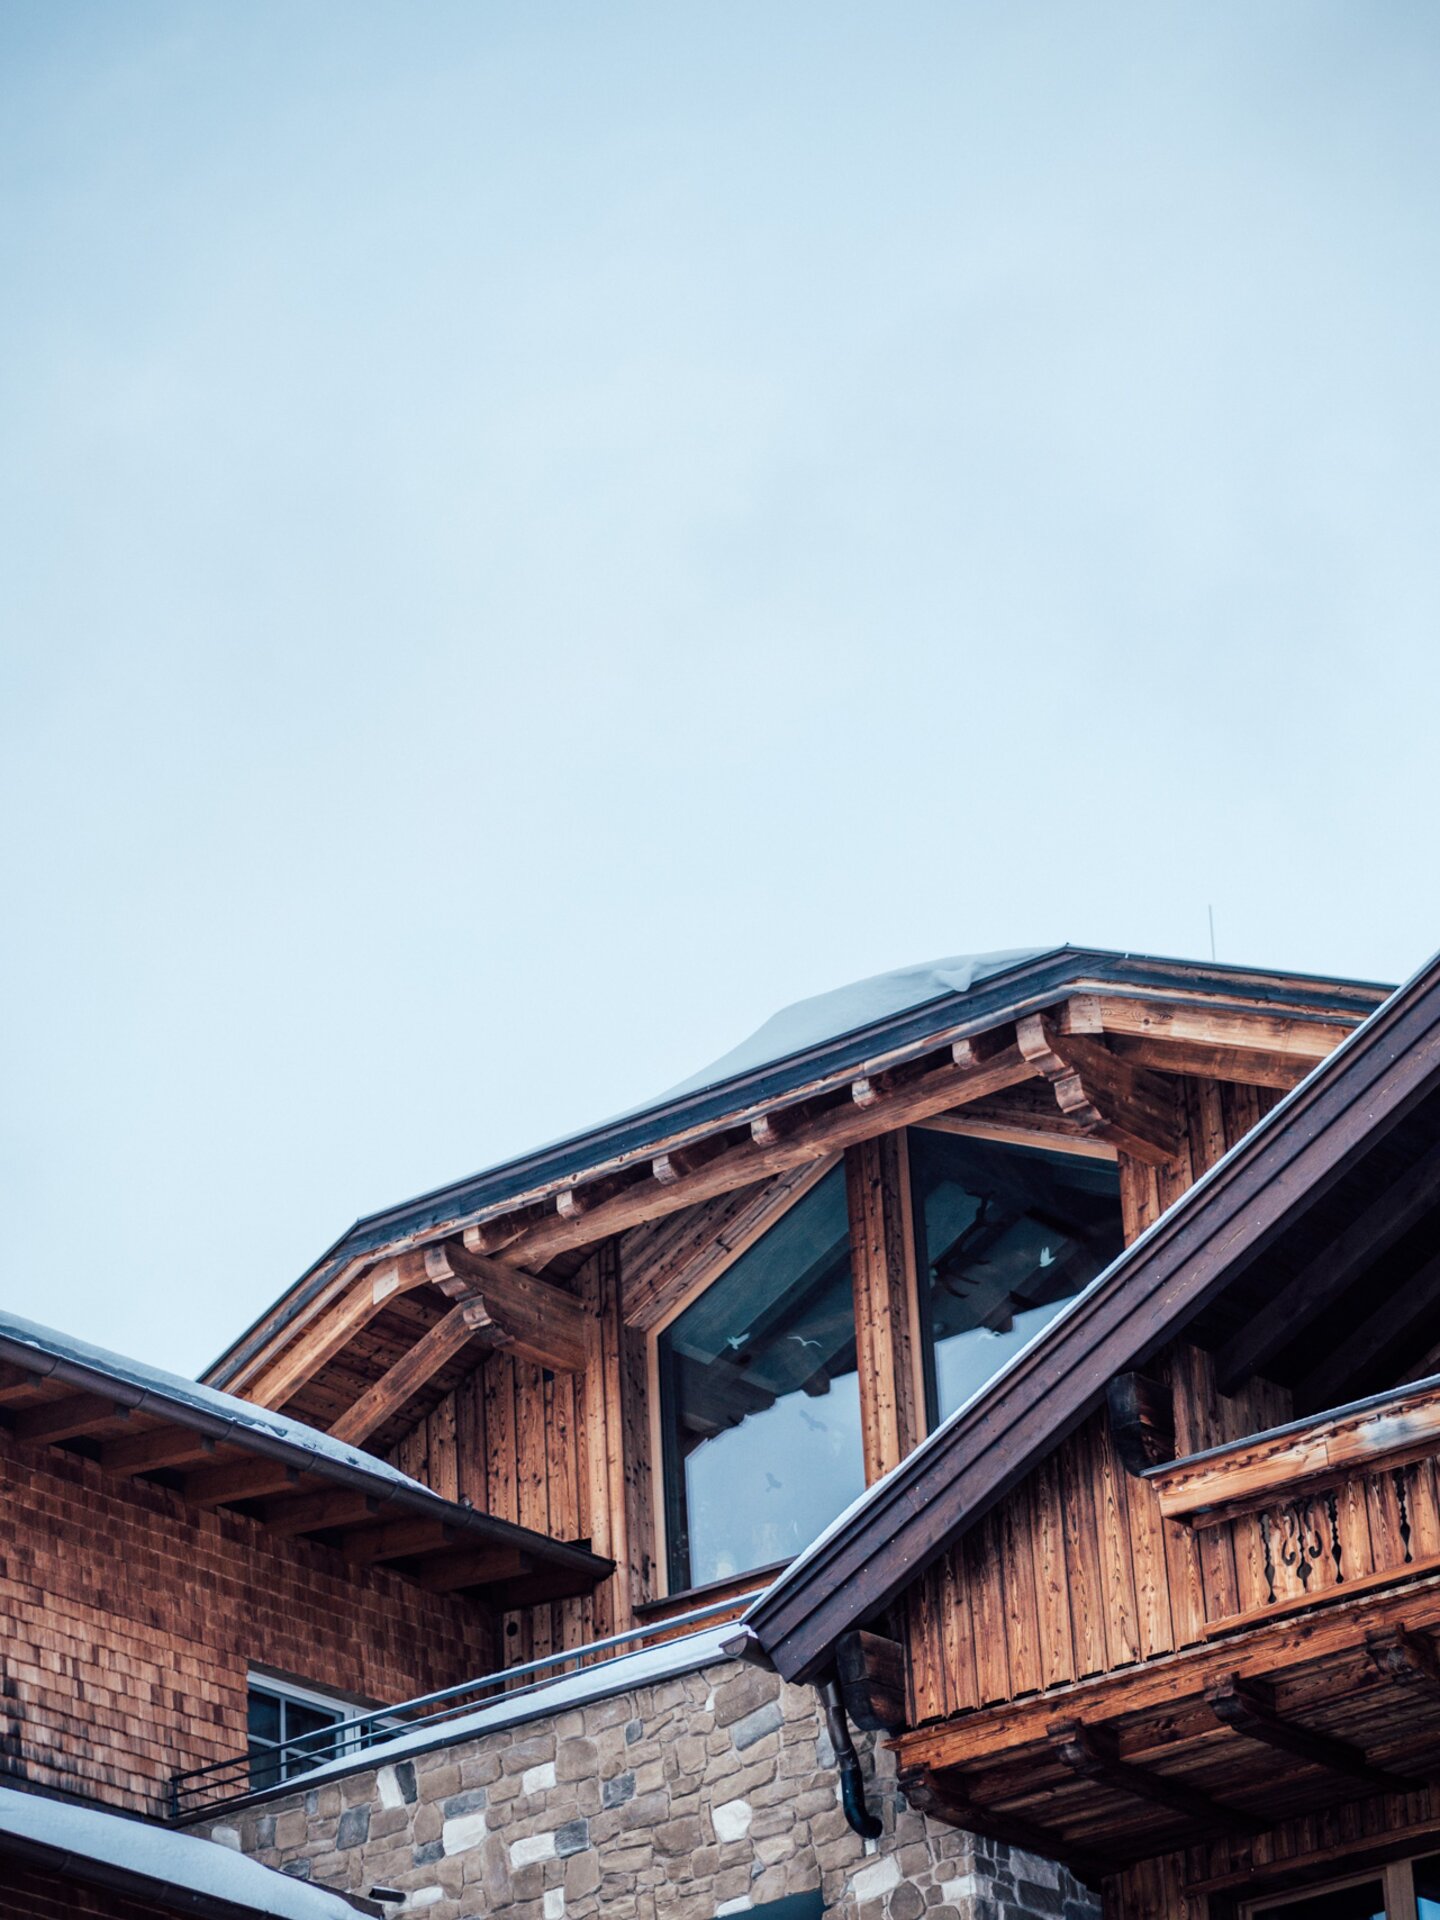 Hausfassade Hotel der Engel mit Holz und Stein im Winter | Der Engel in Tirol